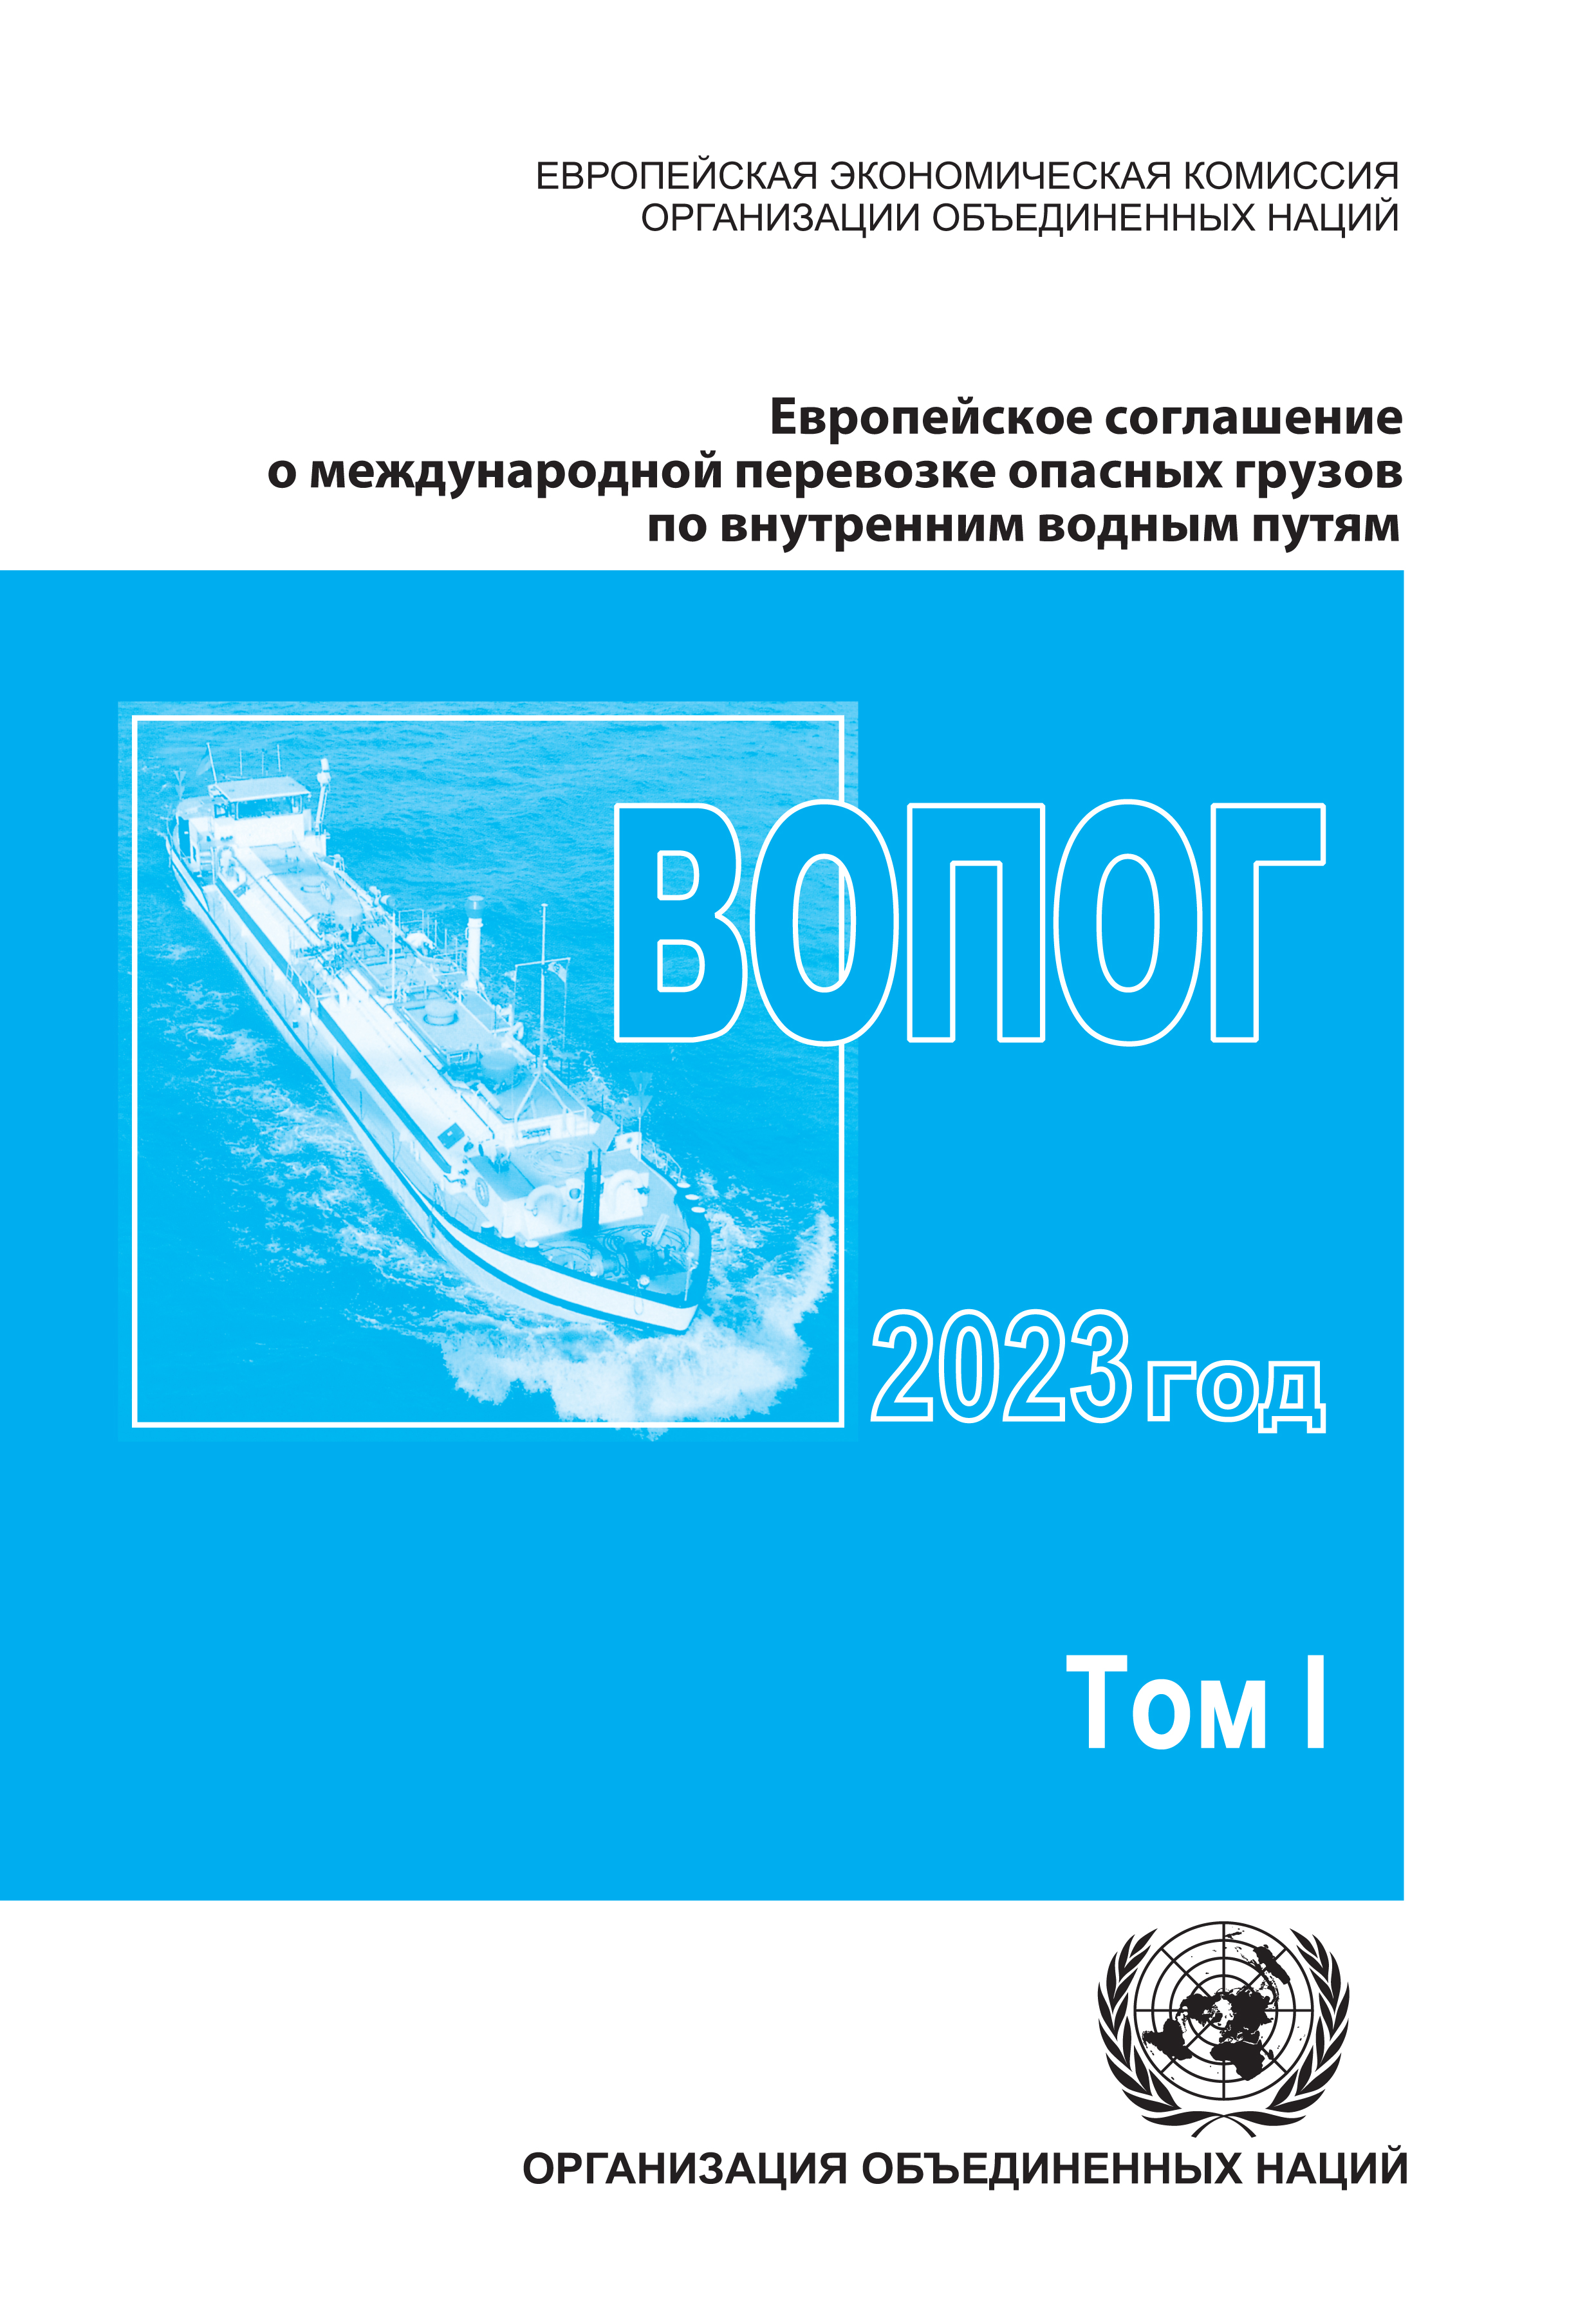 image of Европейское соглашение о международной перевозке опасных грузов по внутренним водным путям (ВОПОГ) 2023